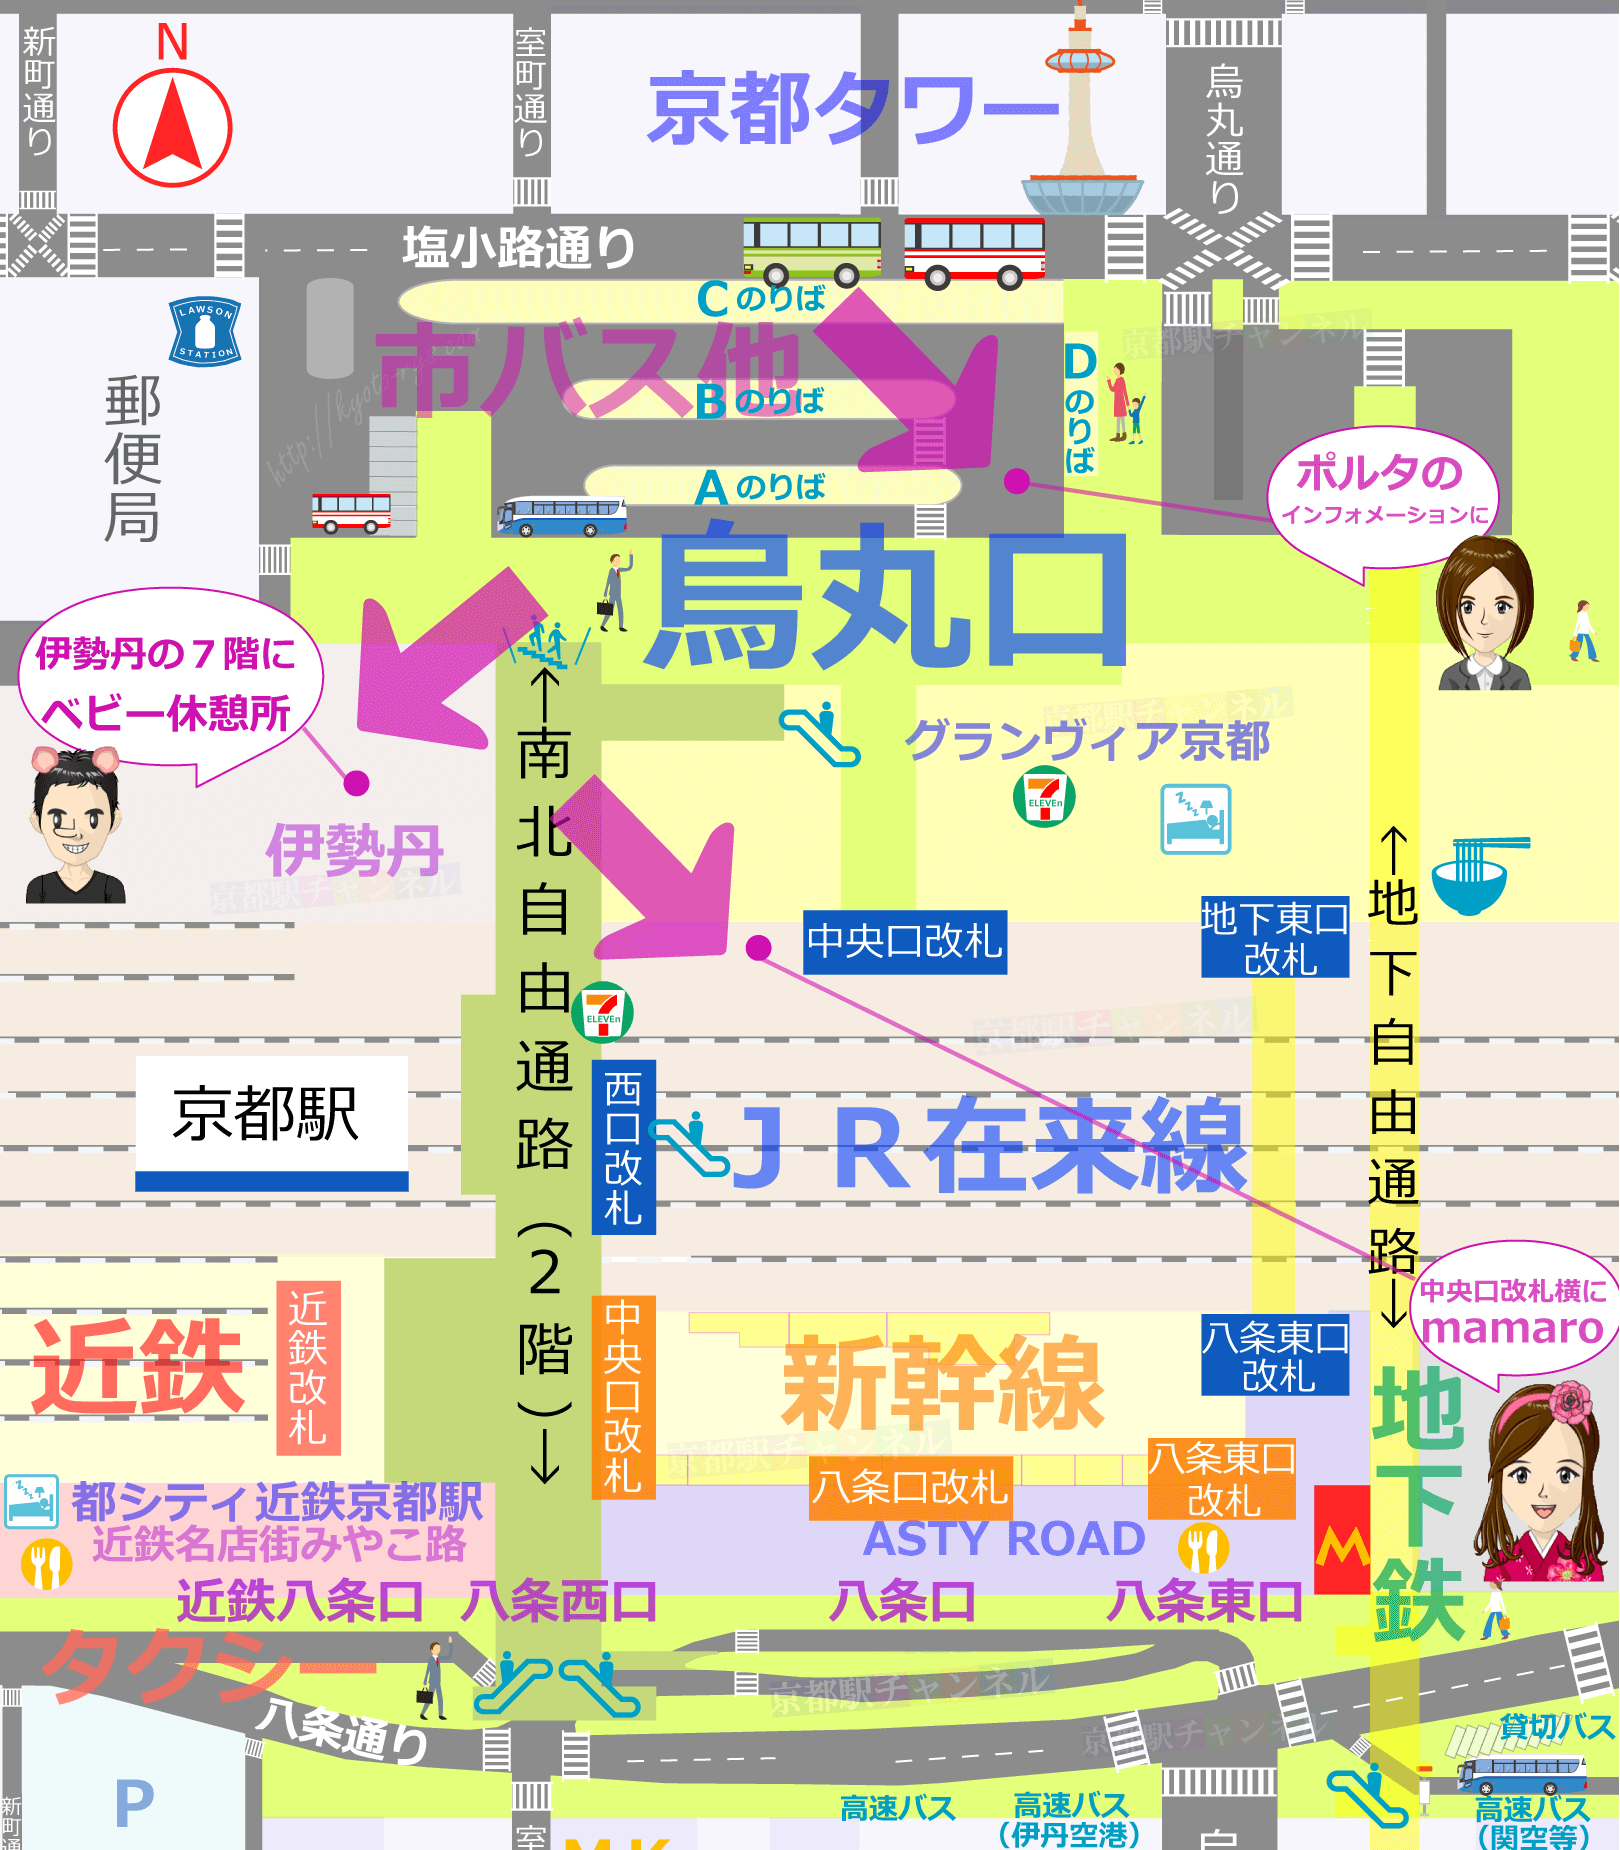 京都駅の全体図と授乳室のマップ